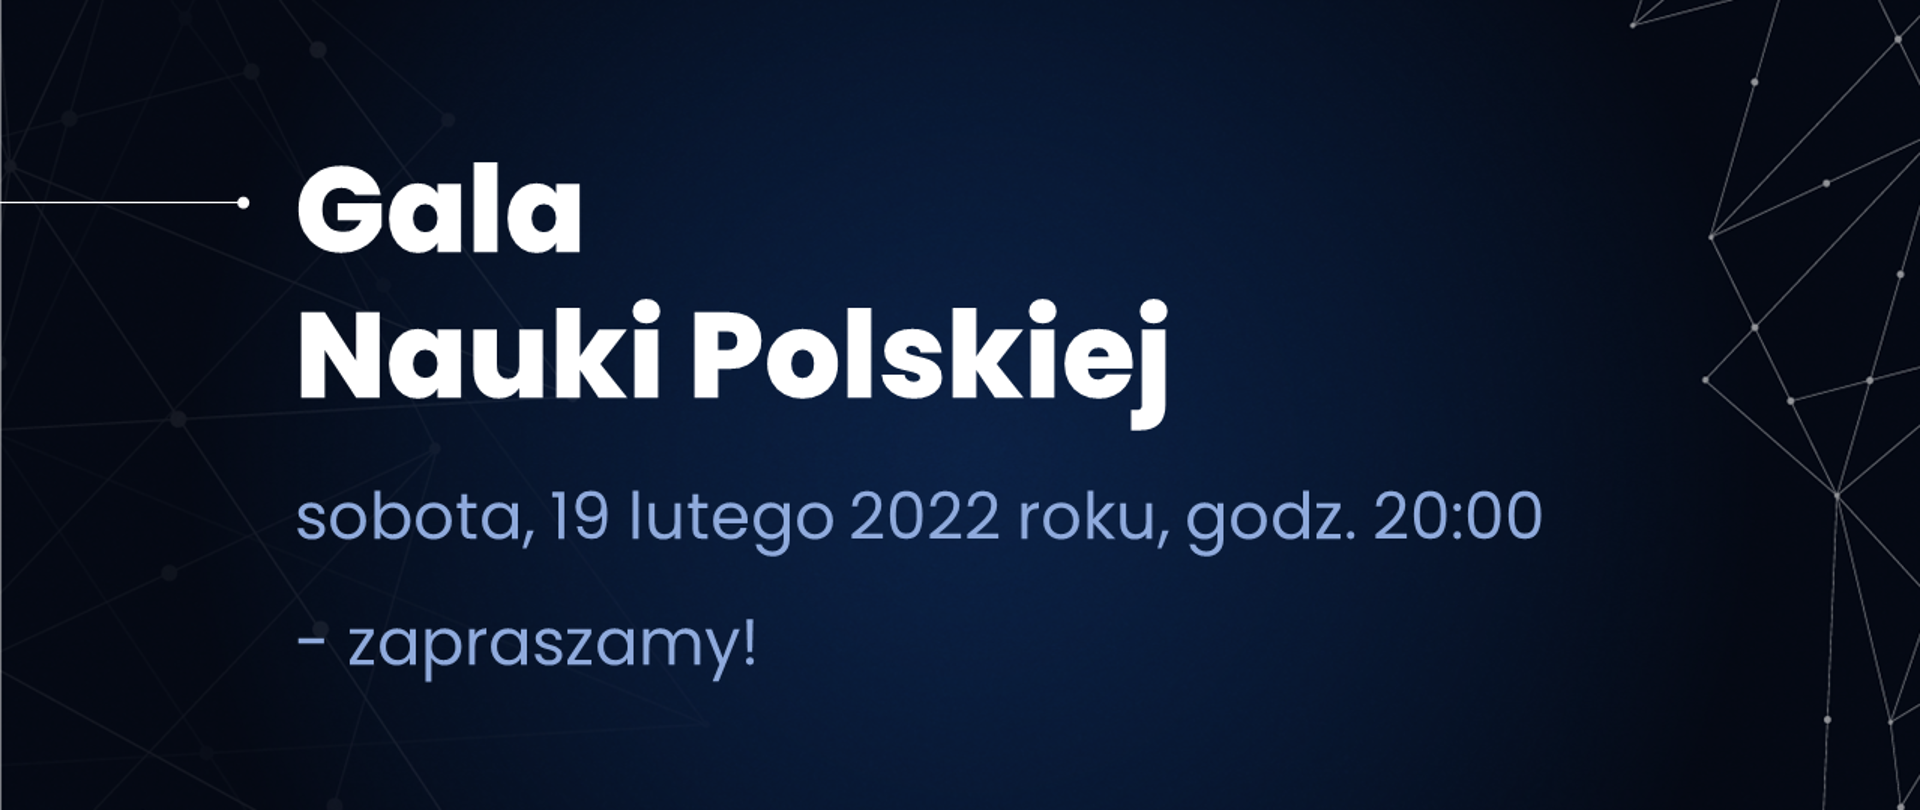 Grafika informująca o Gali Nauki Polskiej, która odbędzie się w sobotę, 19 lutego 2022 roku, o godzinie 20:00.